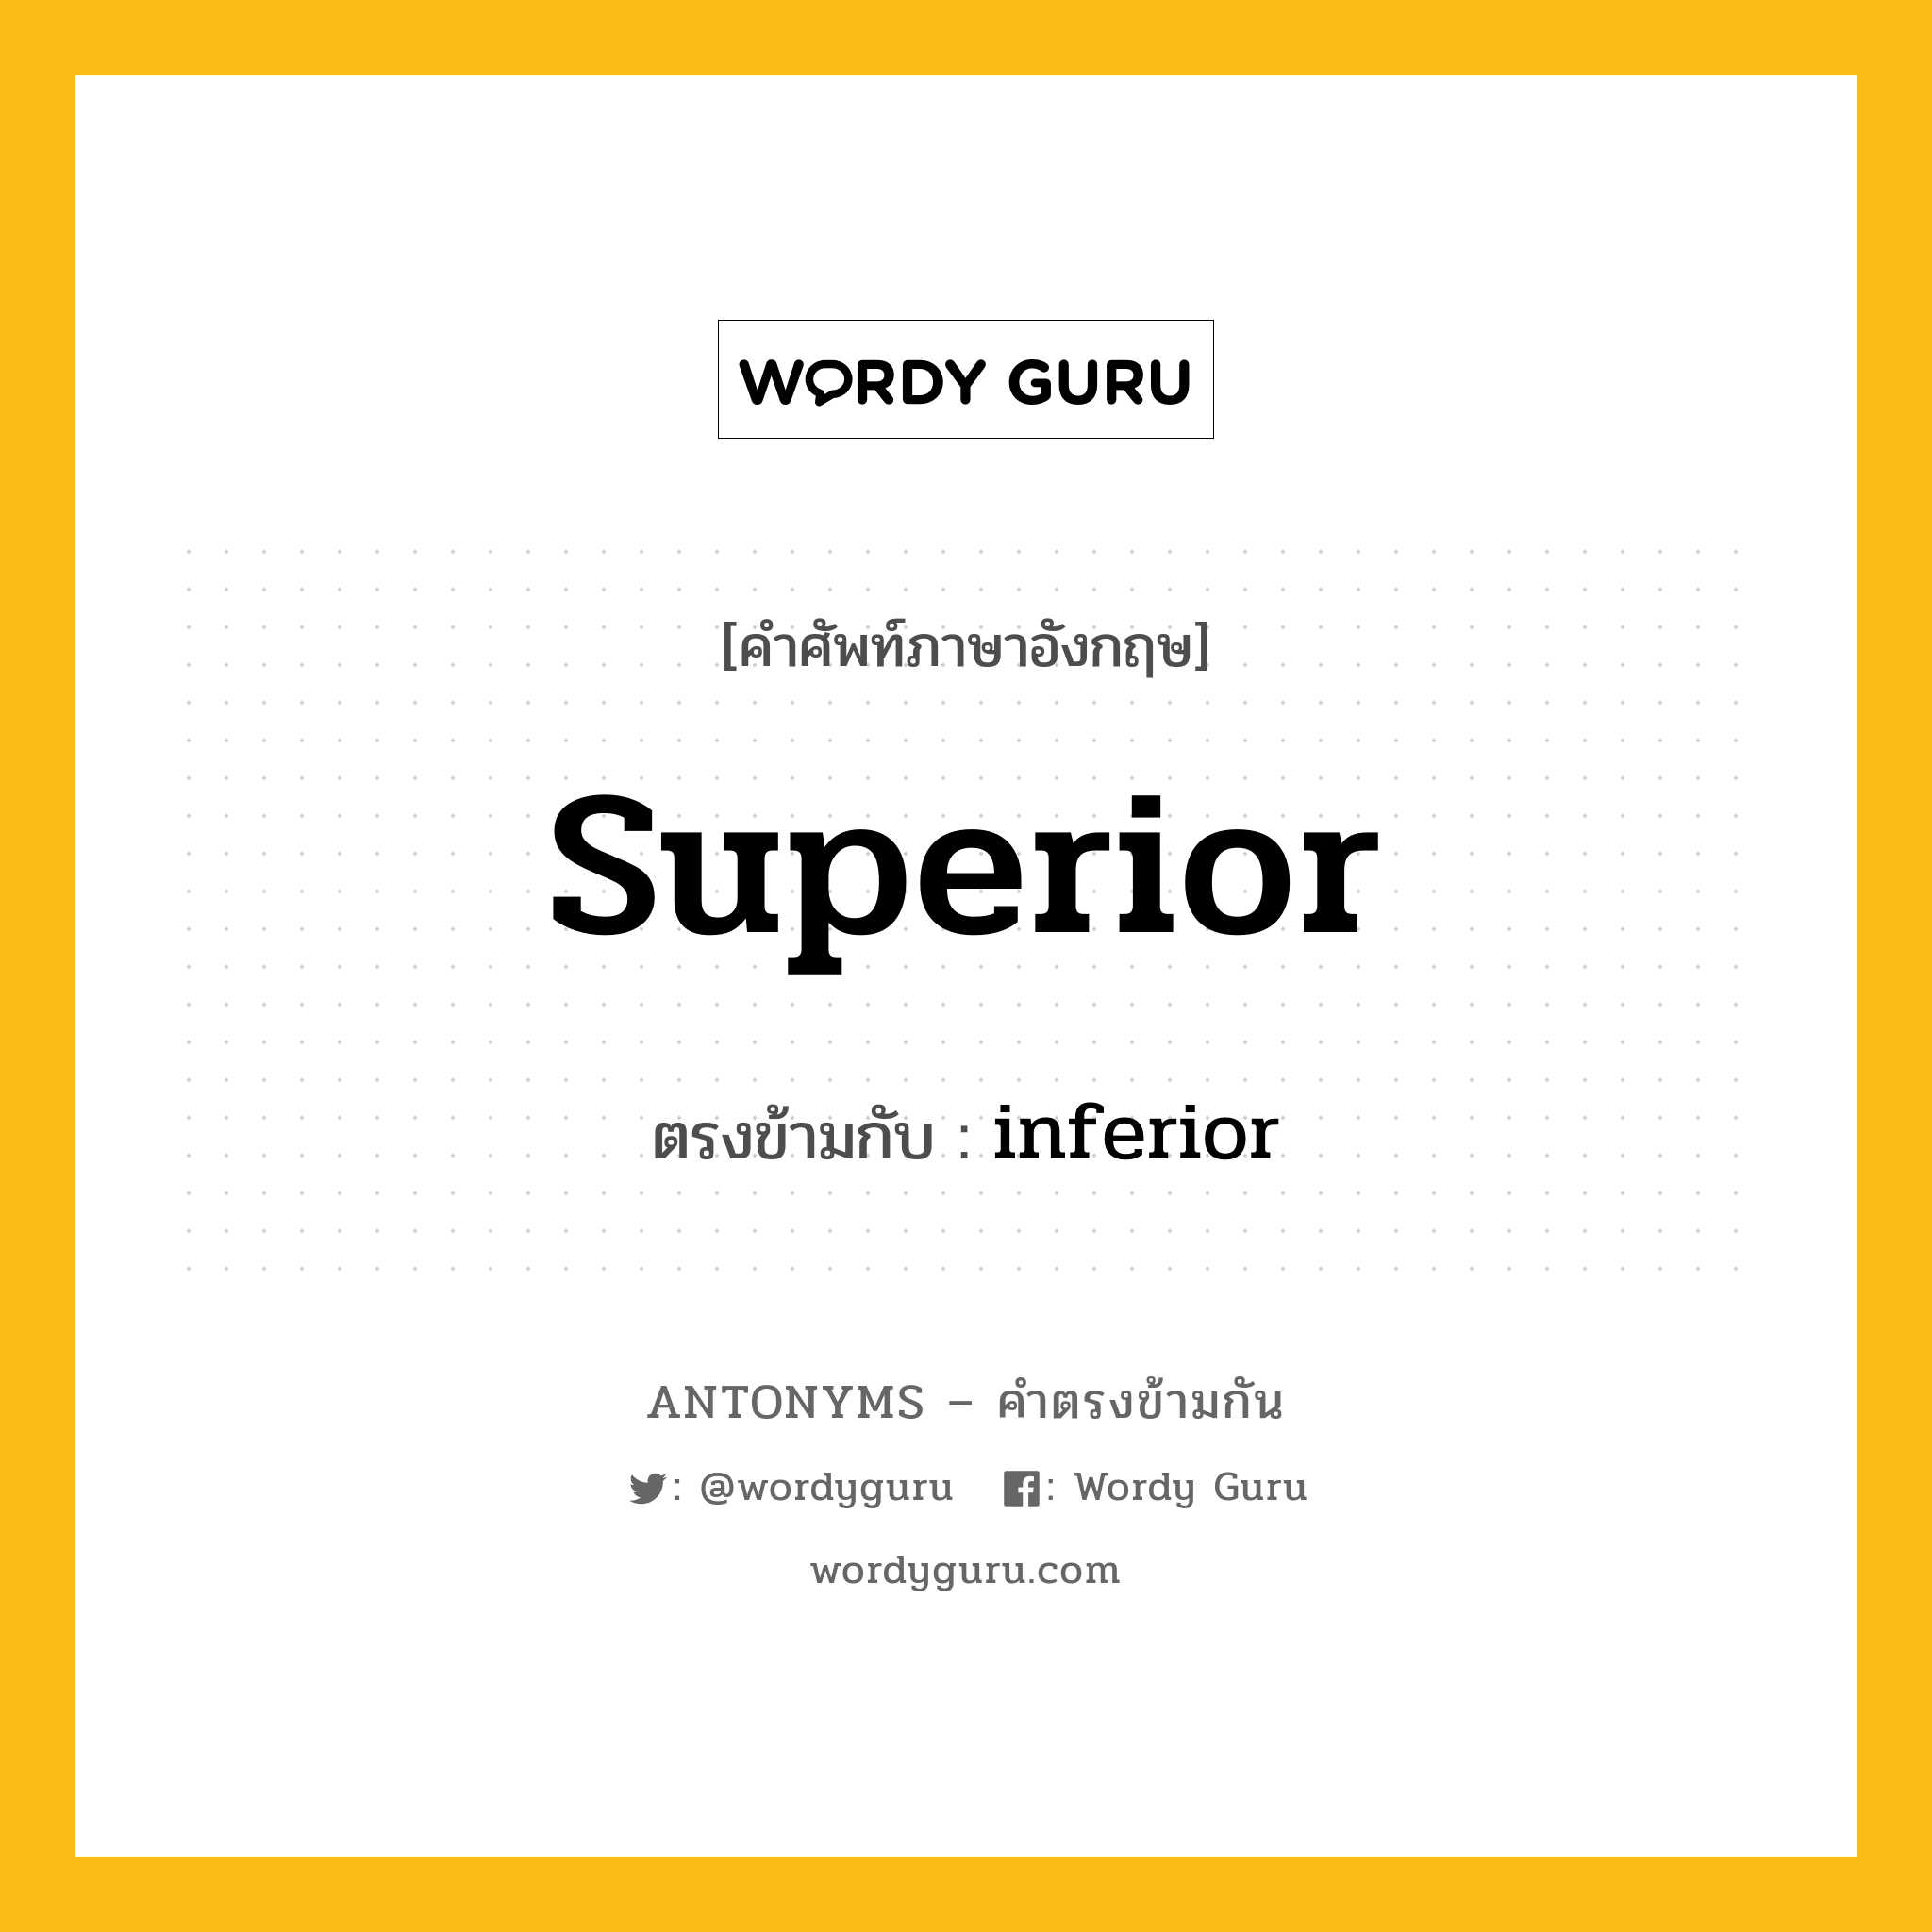 superior เป็นคำตรงข้ามกับคำไหนบ้าง?, คำศัพท์ภาษาอังกฤษ superior ตรงข้ามกับ inferior หมวด inferior